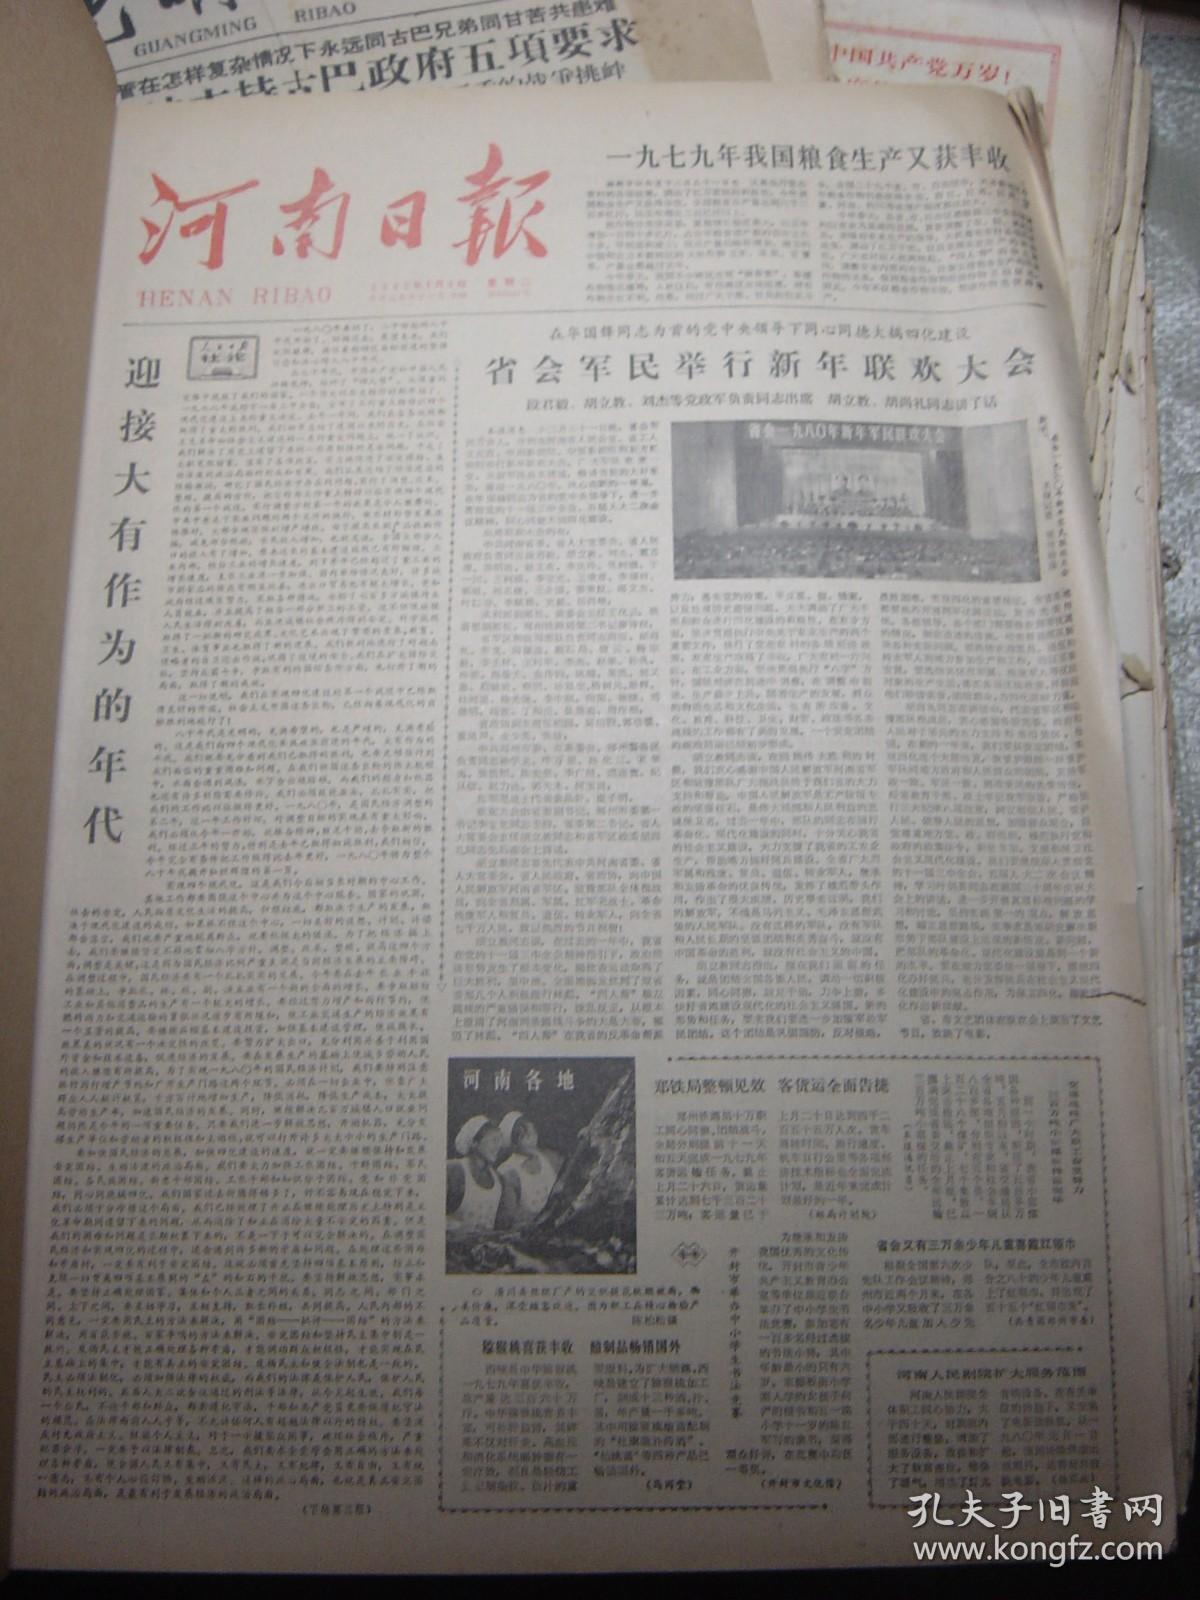 河南日报1980年1-12月全年[合订本]